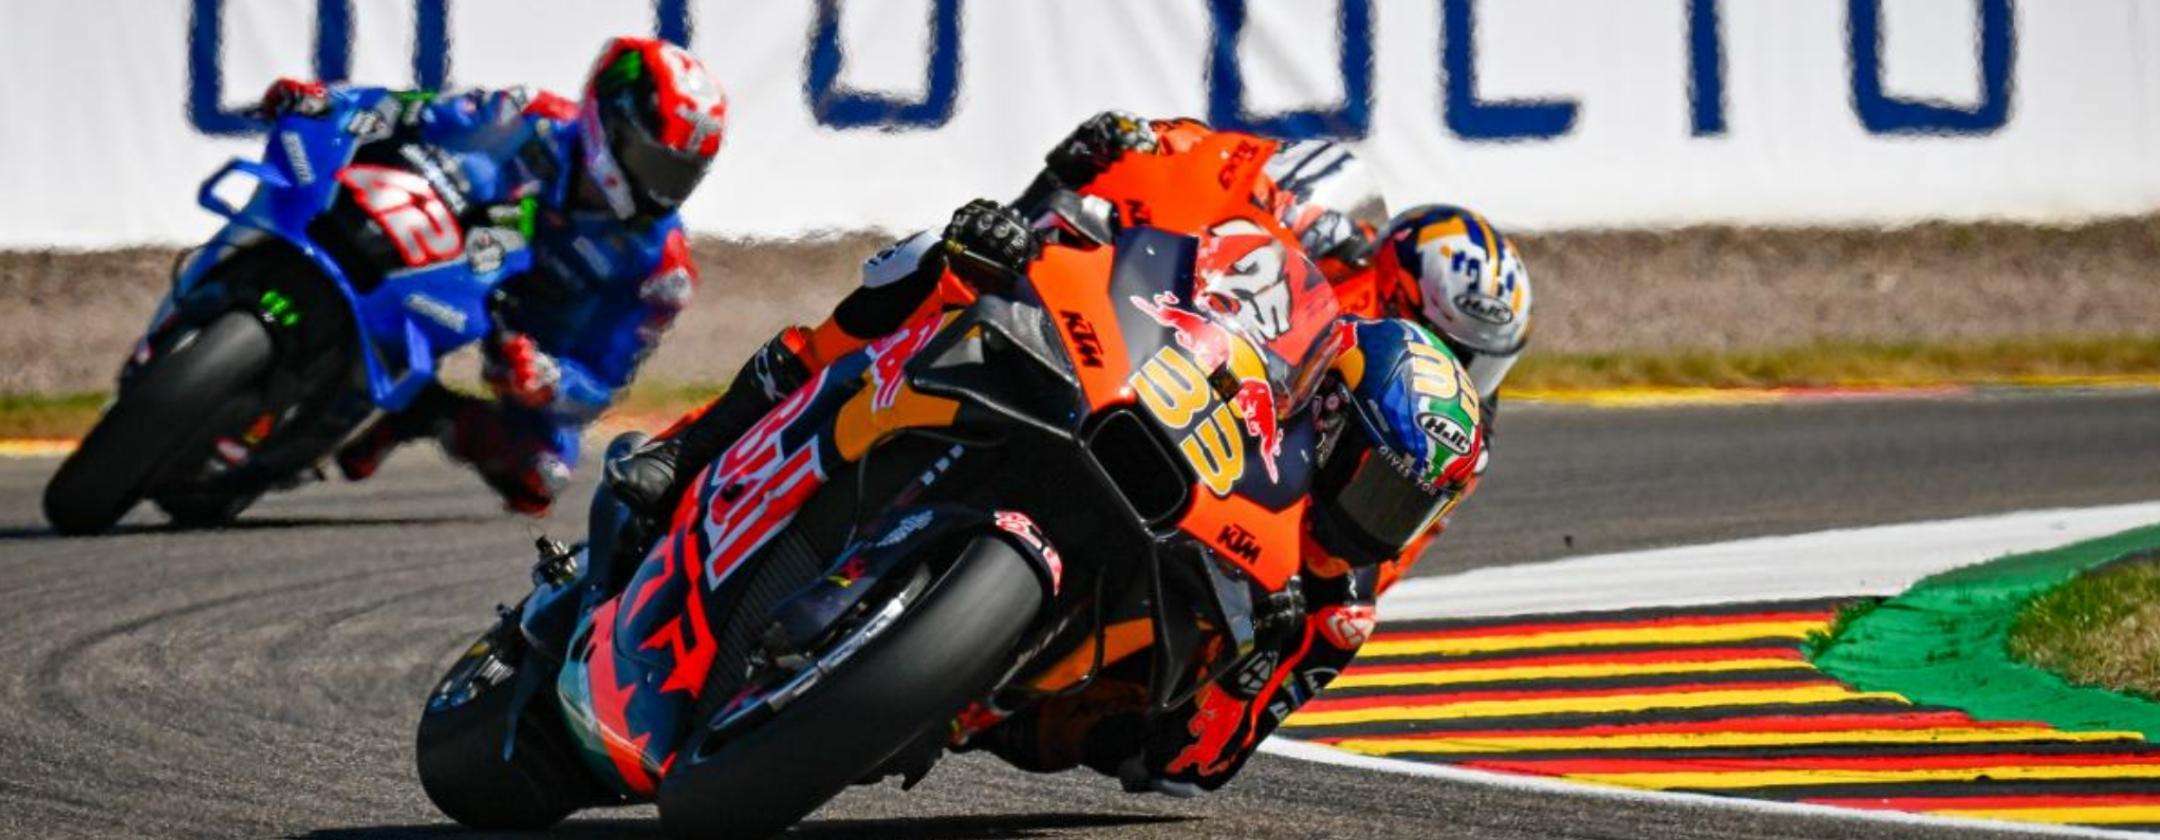 MotoGP Assen: come vedere il GP di Olanda in streaming